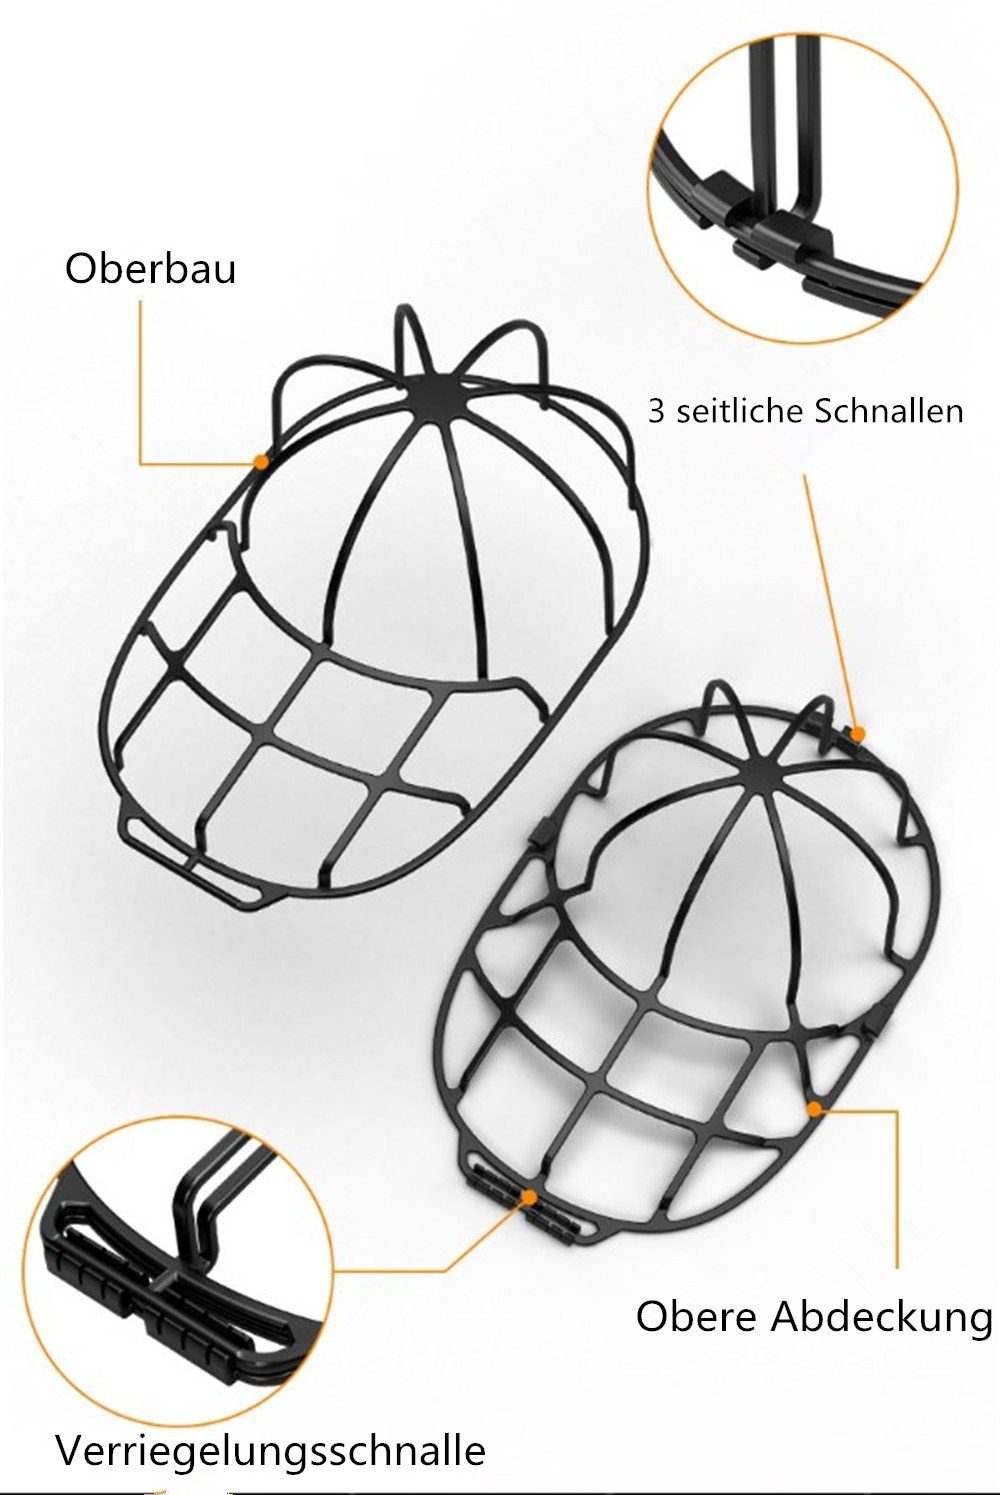 XDeer Ballonmütze 2 black Stück Basecap,Hut-Unterlegscheibe für Waschmaschine für Kappen Waschgestell Waschmaschinen Washer Form Geschirrspüler,Baseball Cap oder